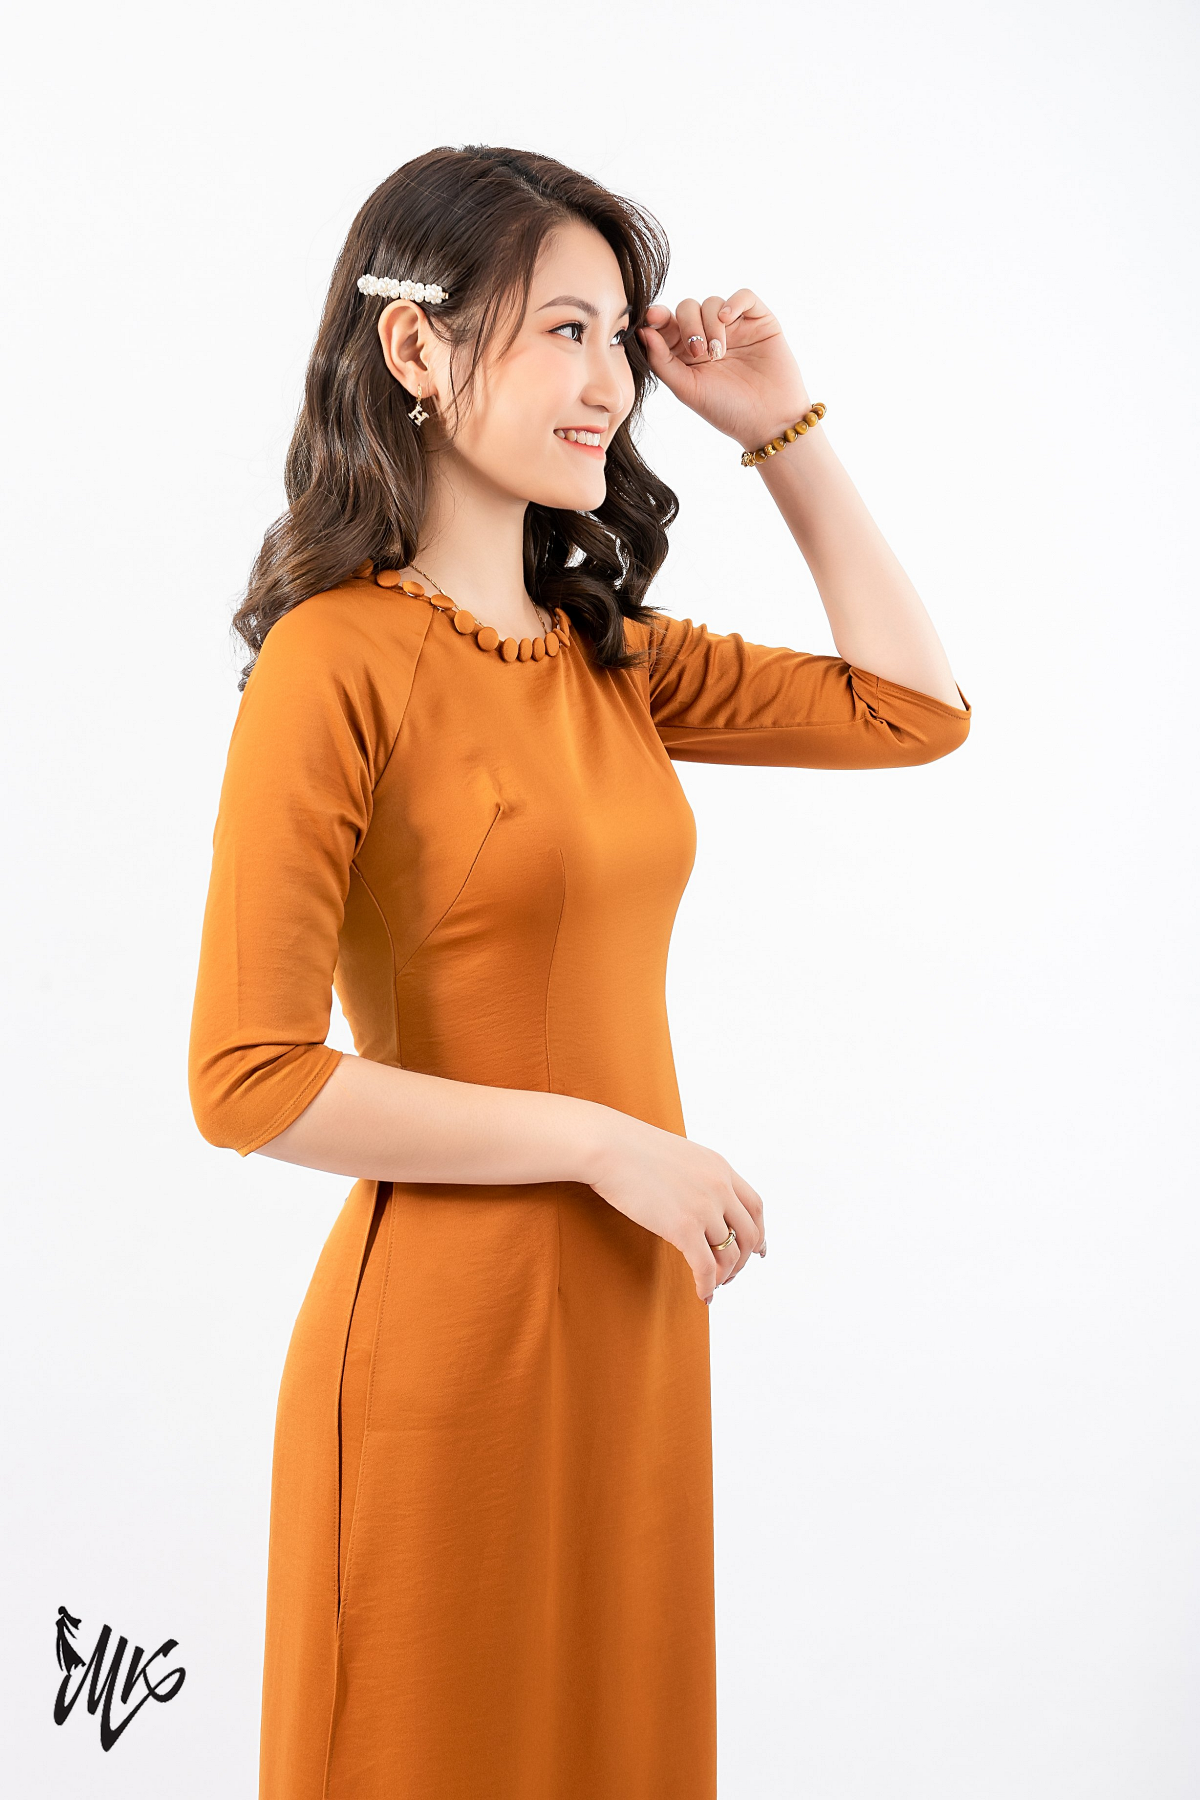 Thương hiệu thời trang áo dài Minh Khang niềm tự hào của phái đẹp Việt - Ảnh 6.